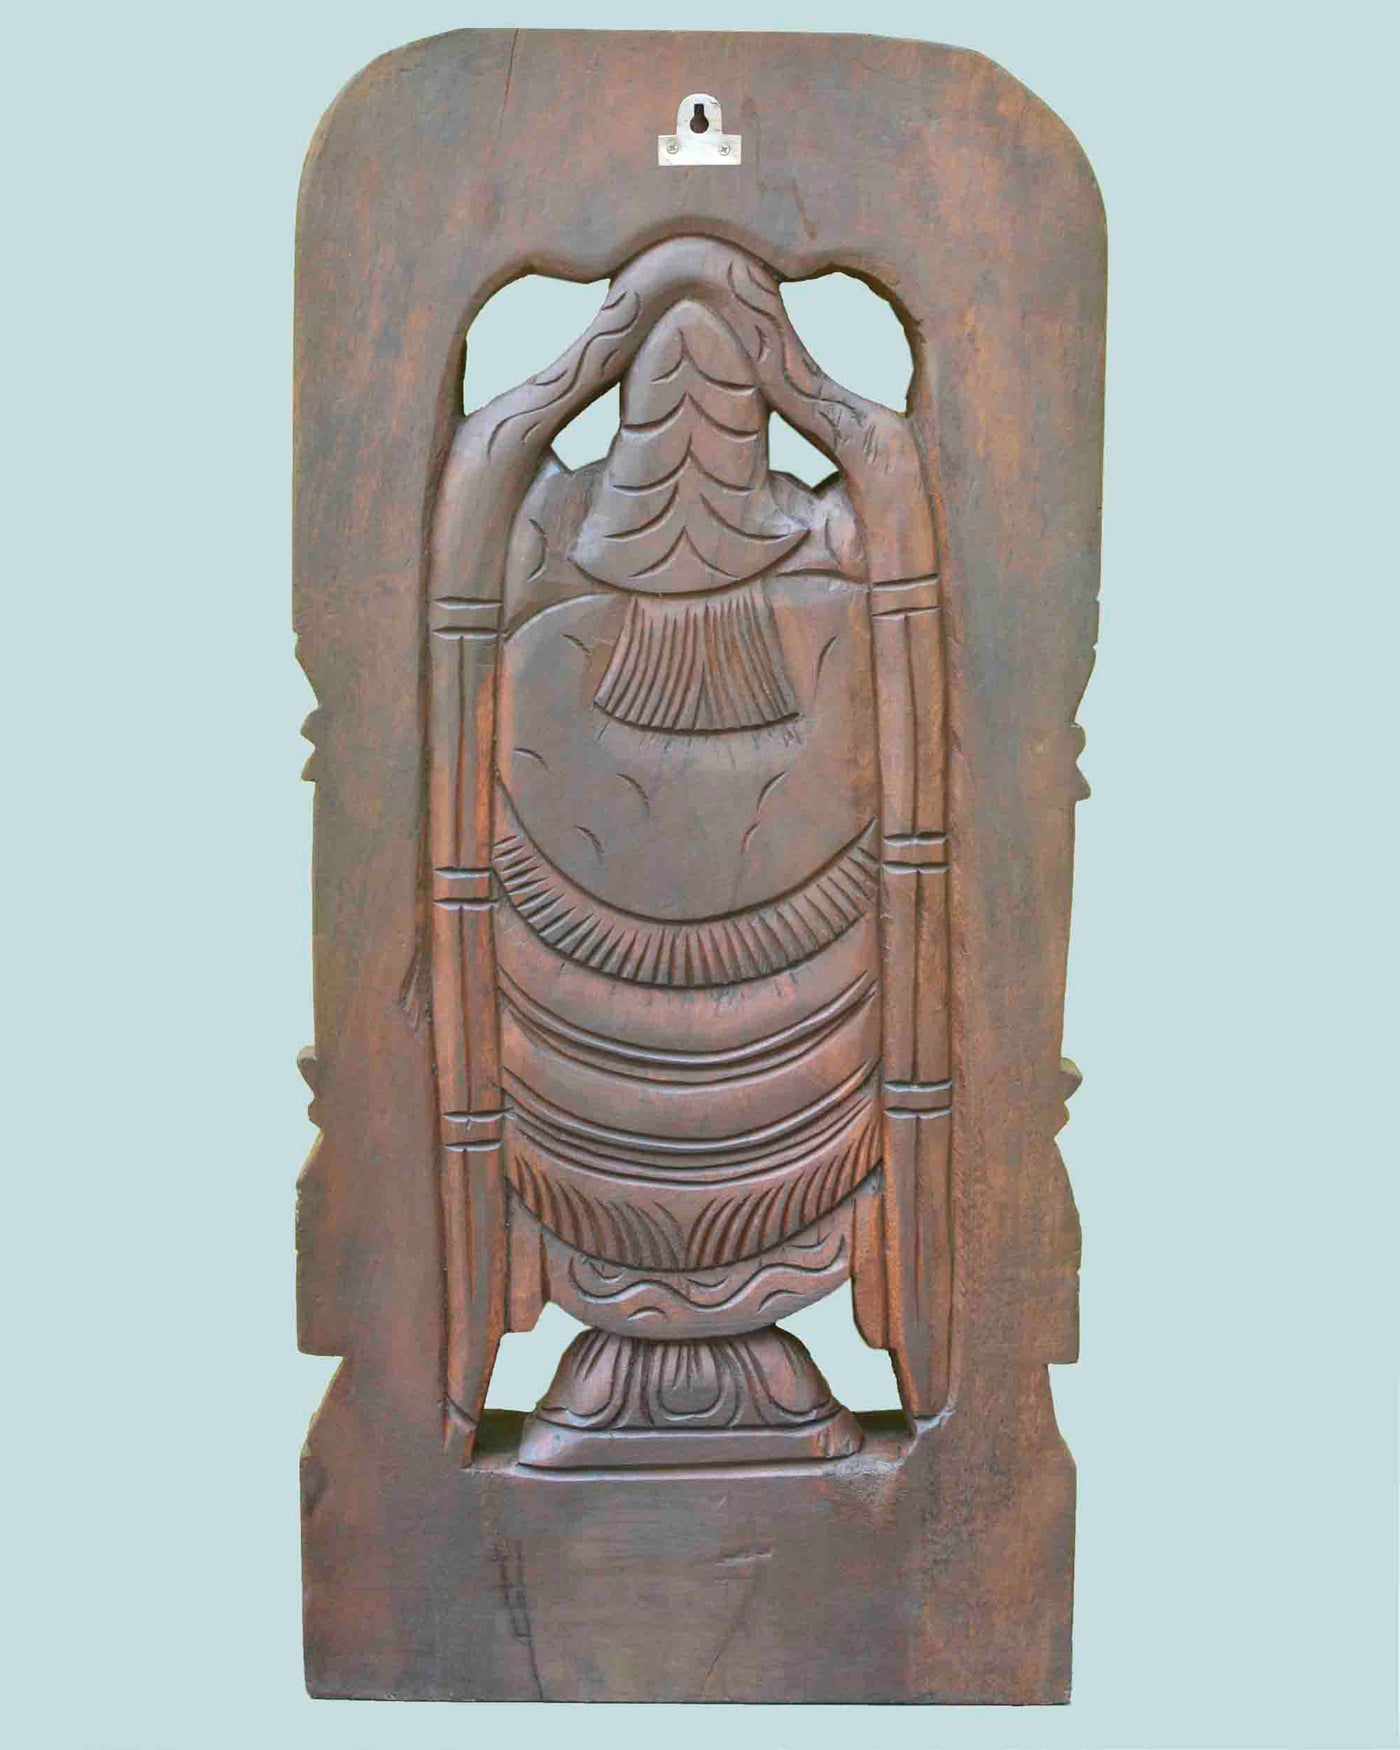 Lord Venkateshwara wooden statue 24"